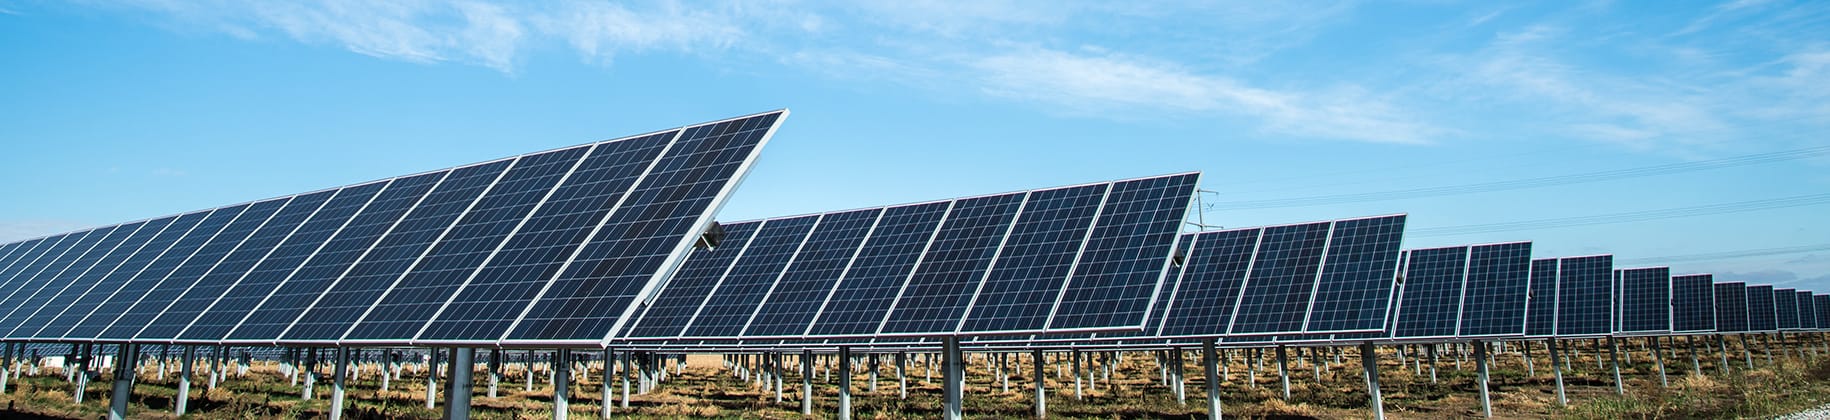 Energia solar: recurso para a retomada econômica no Brasil - GDSolar